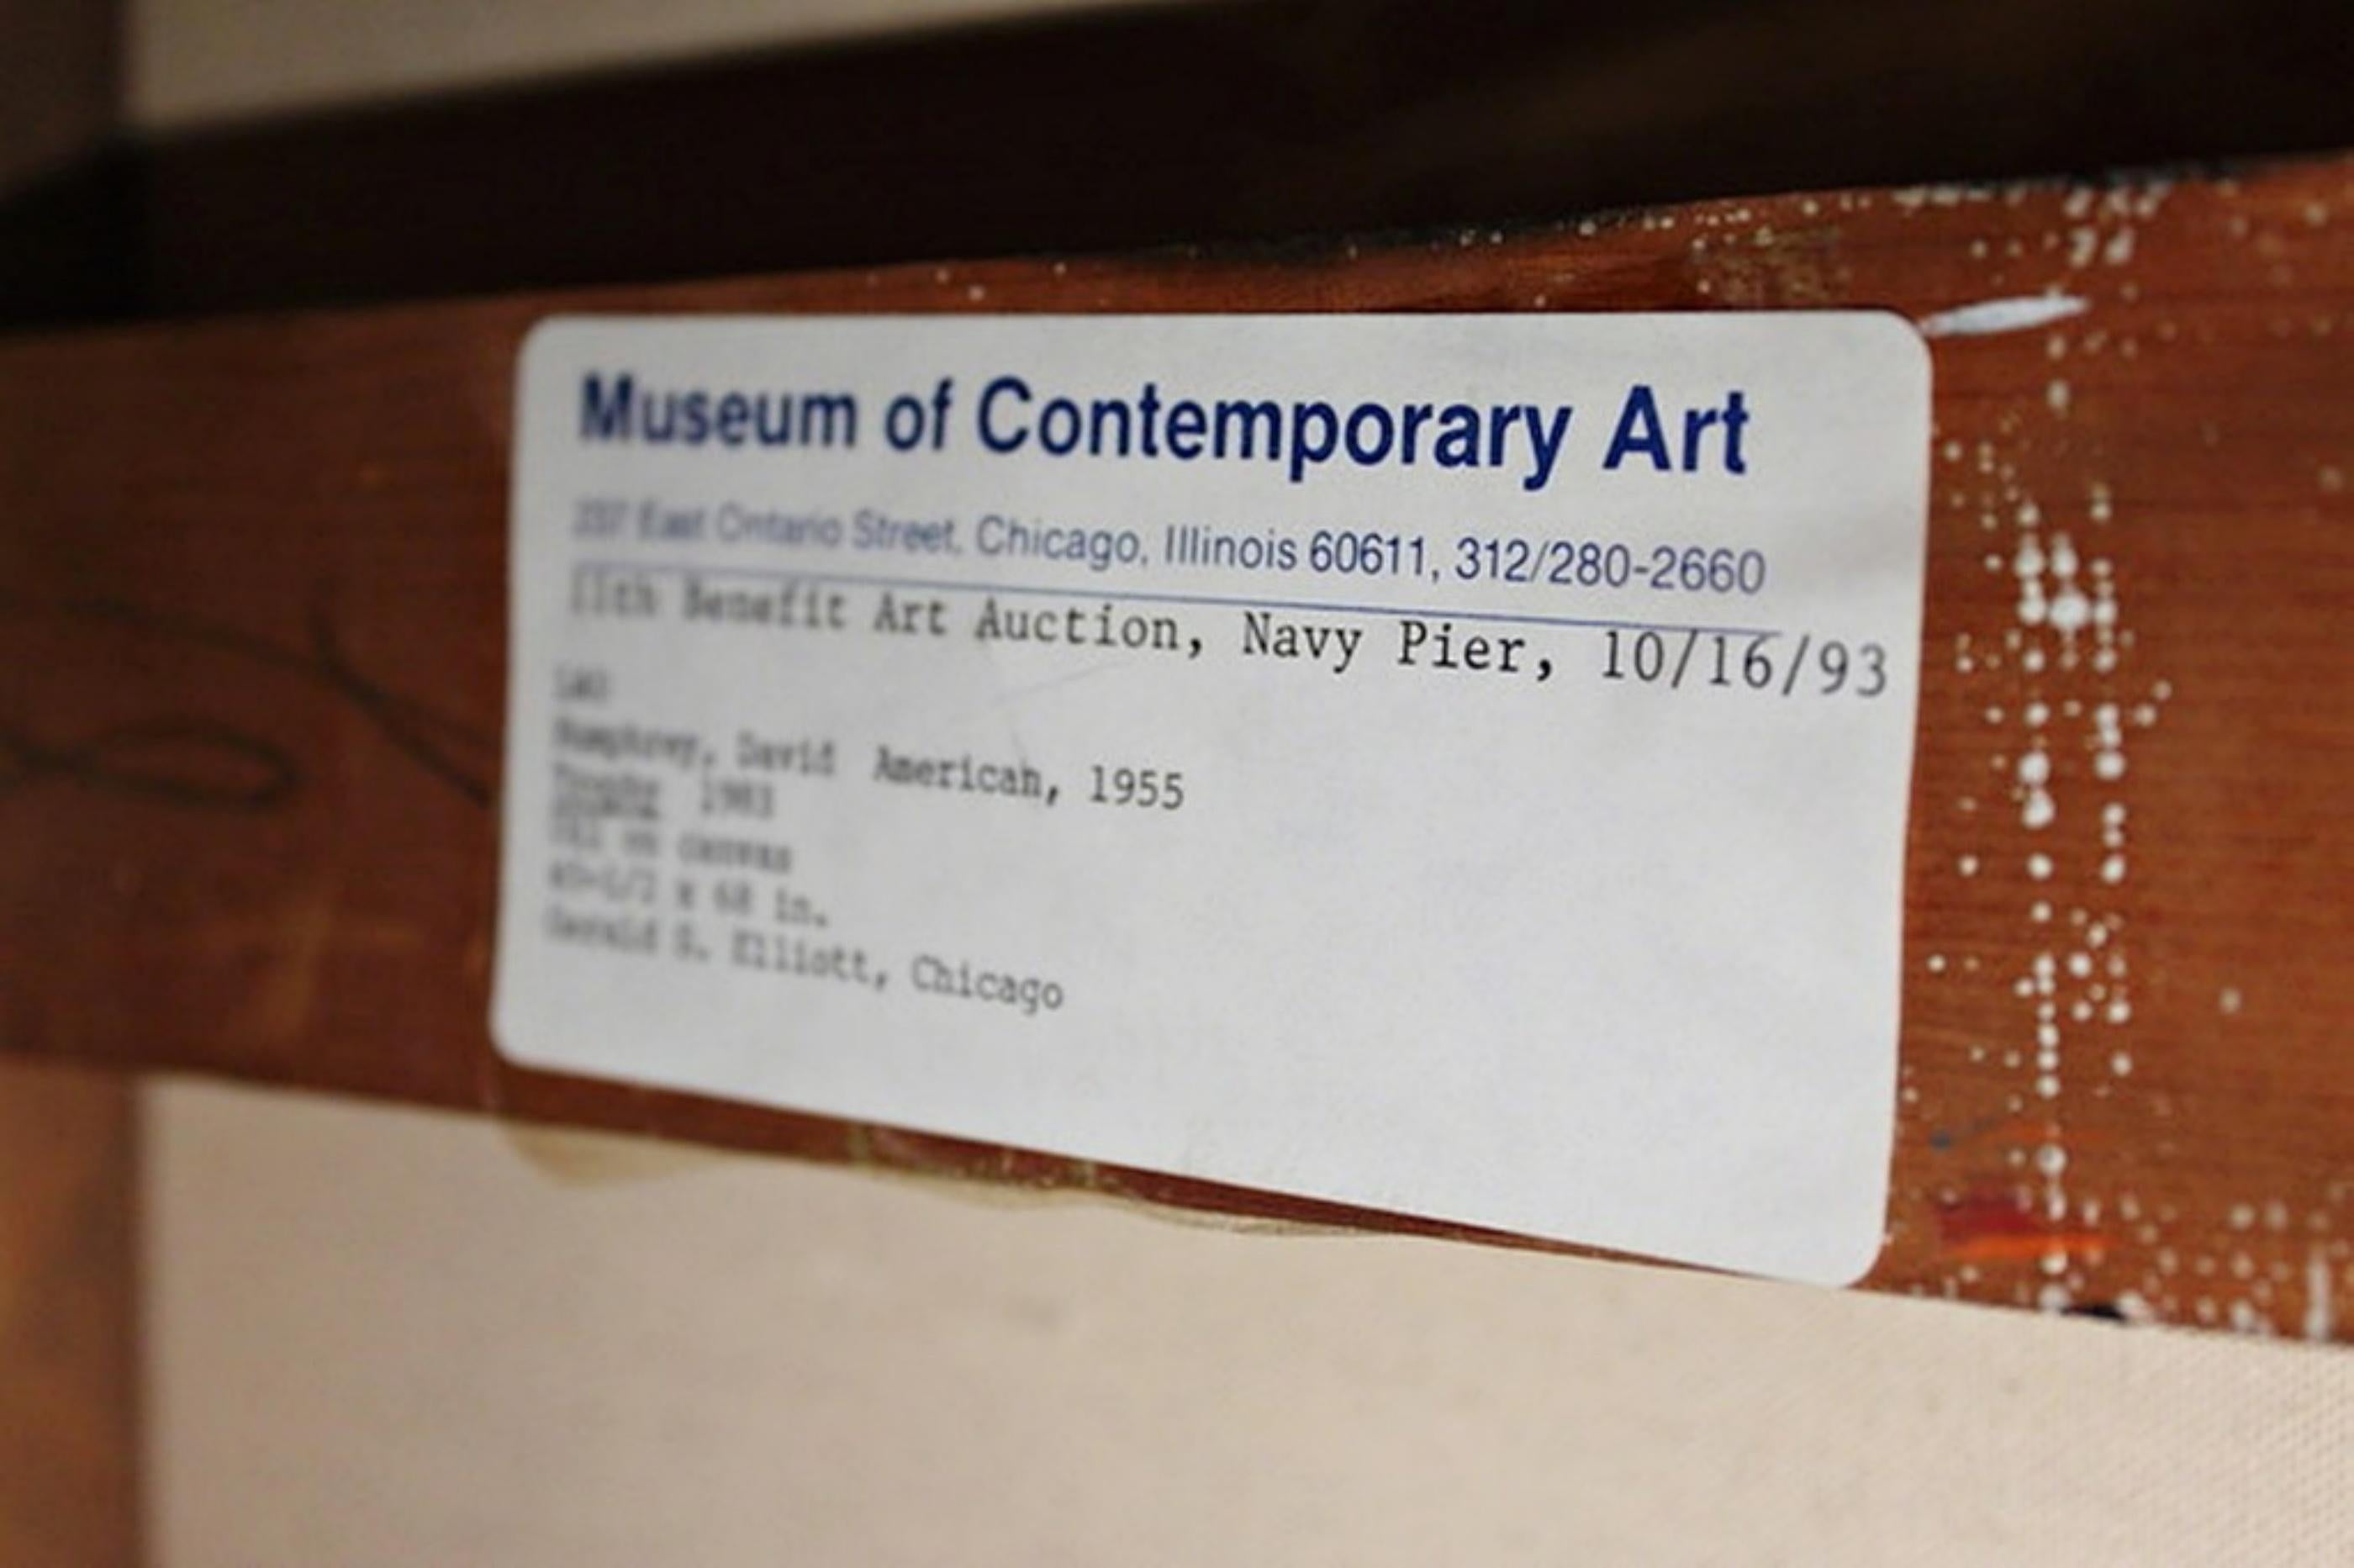 David Humphrey
Trophée (Musée d'art contemporain, Chicago), 1983
Peinture à l'huile sur toile
Signé deux fois : Signé à la main et daté au verso, l'artiste a également signé son nom et écrit son adresse personnelle au verso. 
Il s'agit d'une œuvre